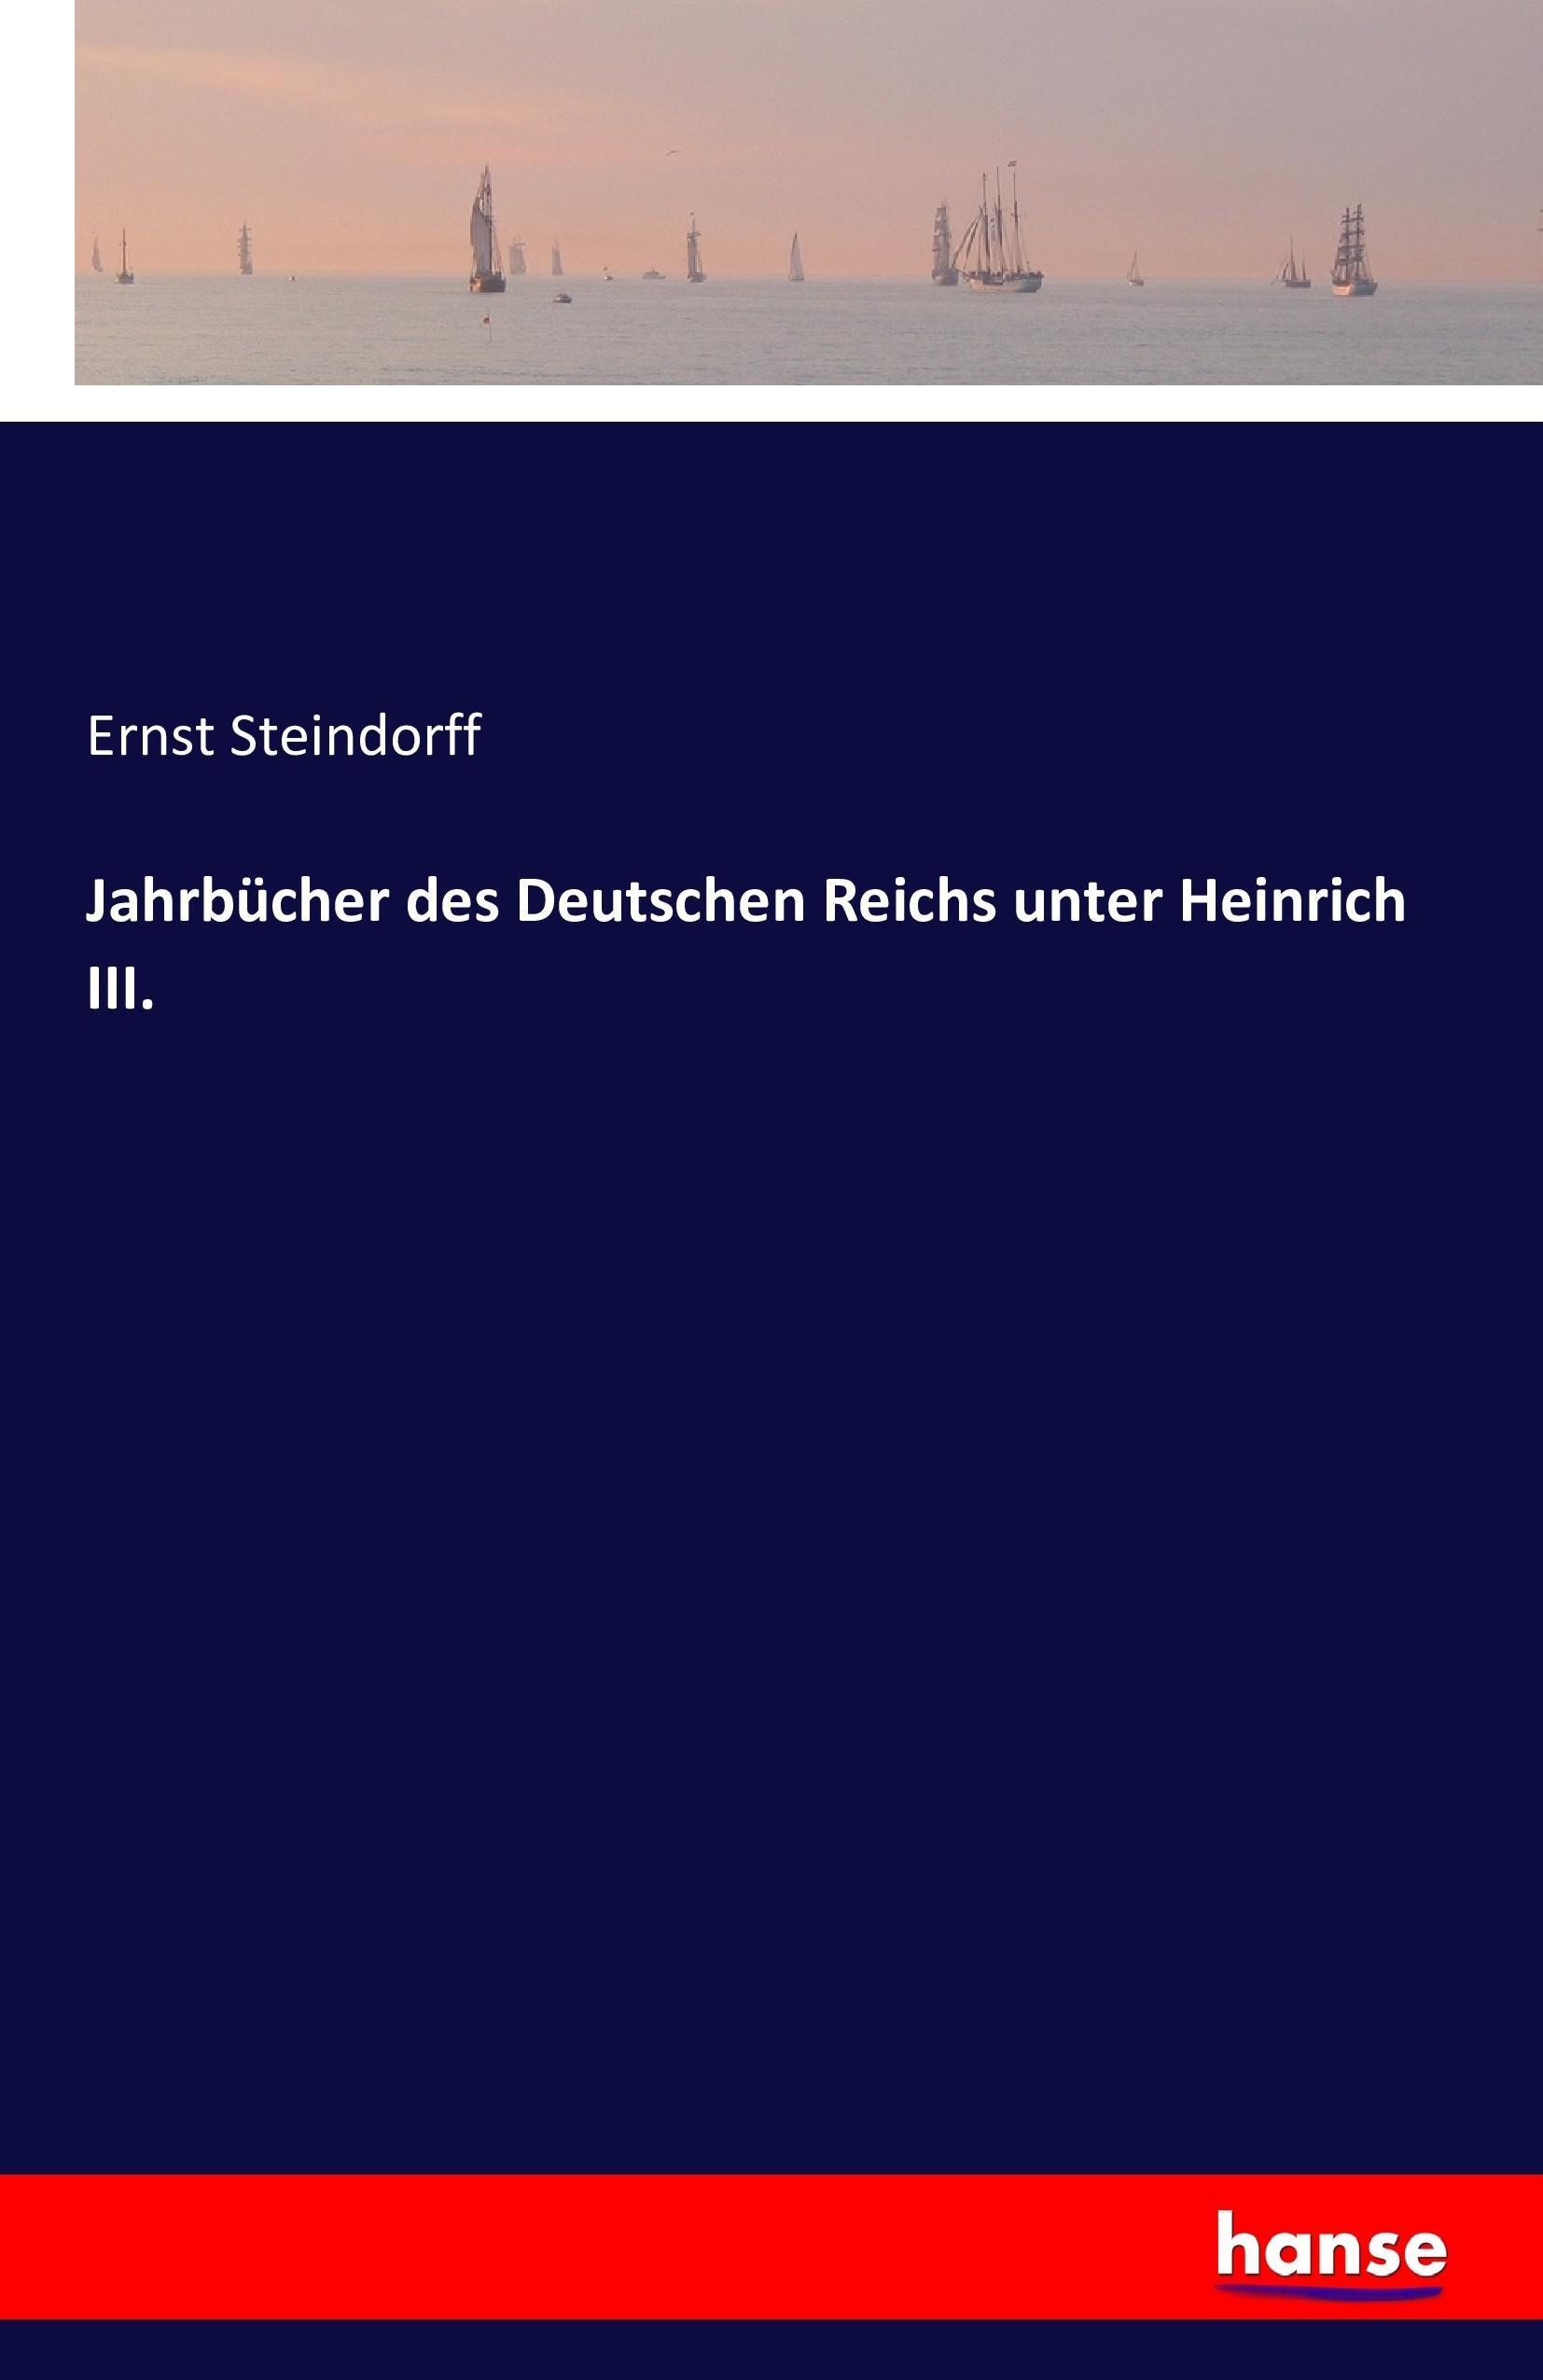 Jahrbuecher des Deutschen Reichs unter Heinrich III. - Steindorff, Ernst